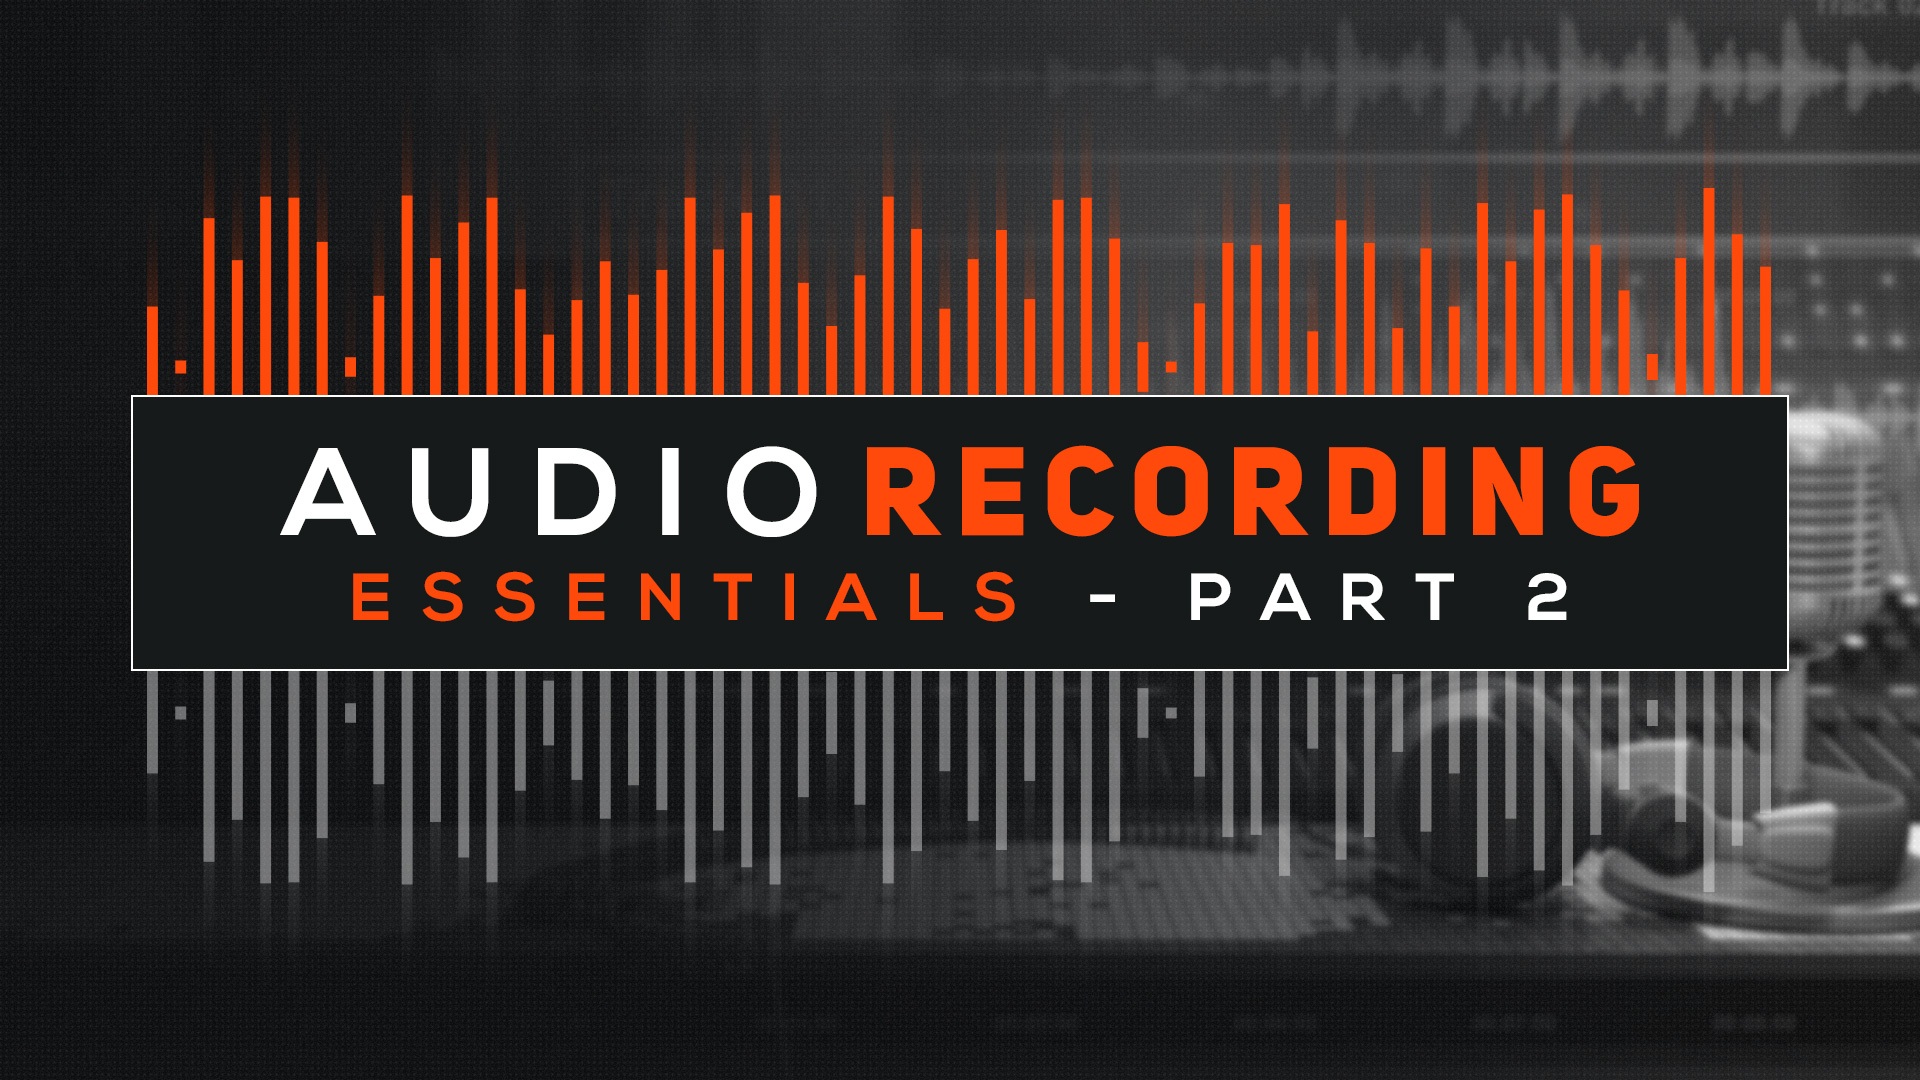 Sharefaith - Audio Recording Essentials - Part 2